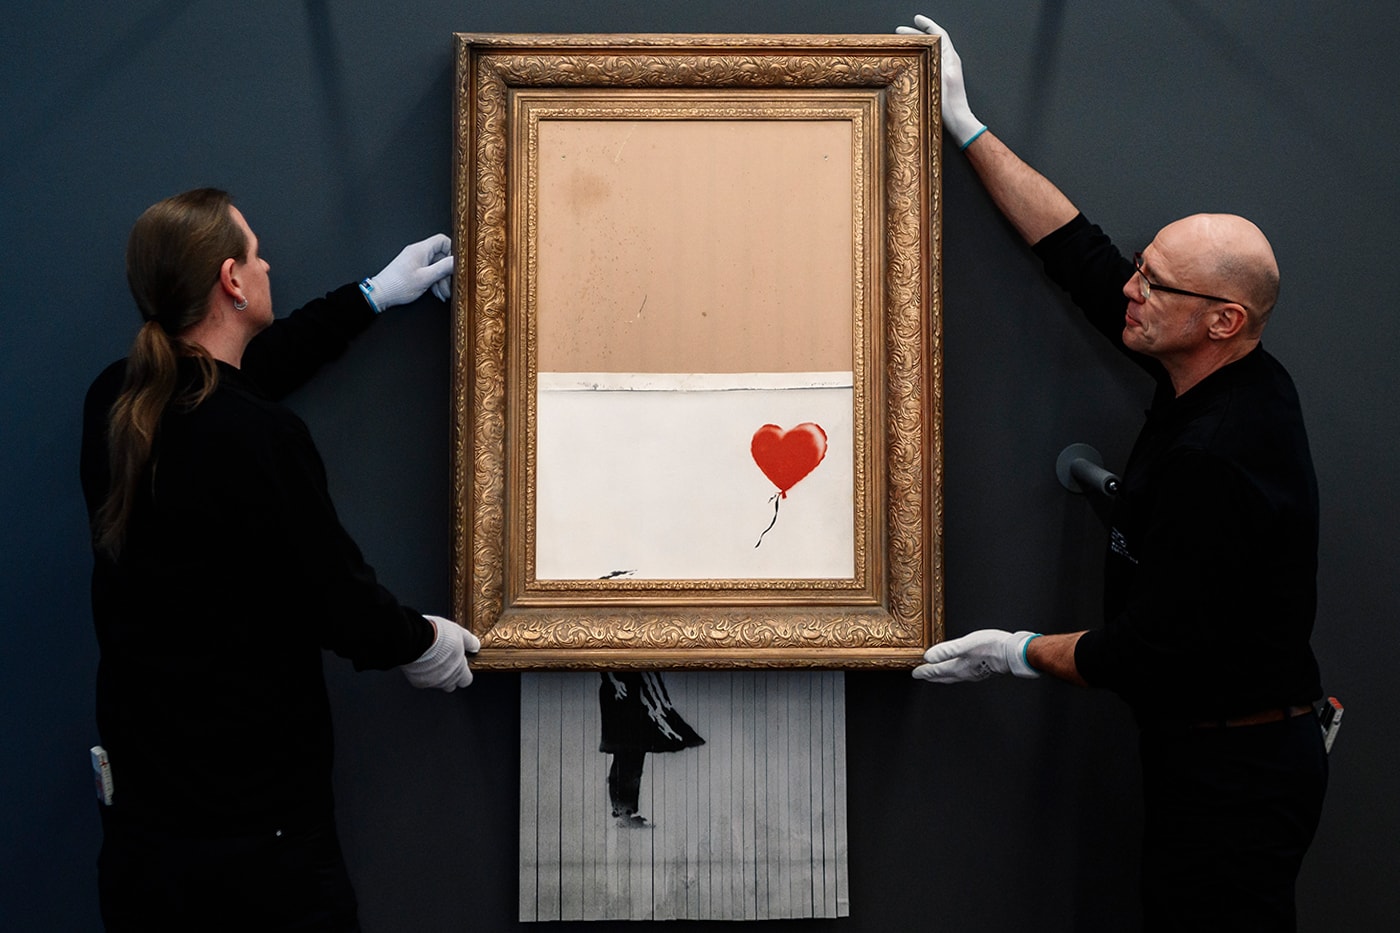 サザビーズがバンクシーの絵画作品 “Love is in the Air” のオークションの決済に暗号通貨を導入 Sotheby’s Accept Cryptocurrency Bitcoin Ethereum Upcoming Banksy Auction "Love Is in the Air"